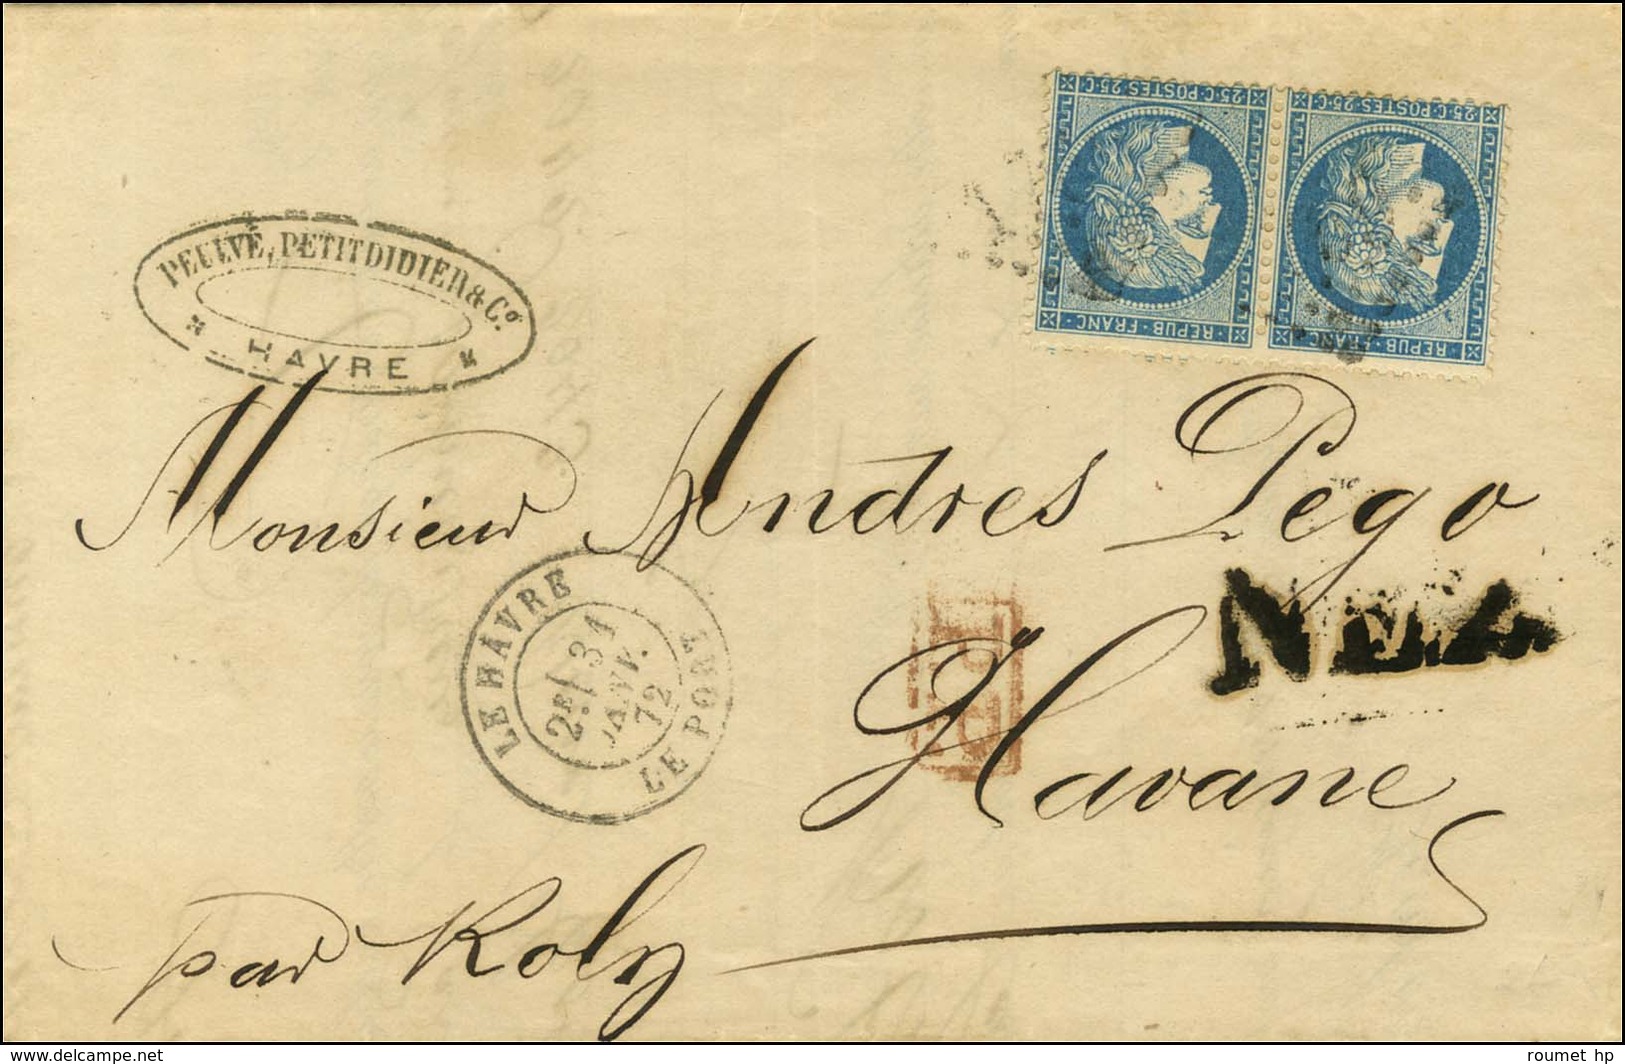 GC 1769 / N° 60 Paire Càd LE HAVRE / LE PORT Sur Lettre Pour La Havane Au Tarif Des Bâtiments De Commerce. 1872. - TB. - 1871-1875 Cérès